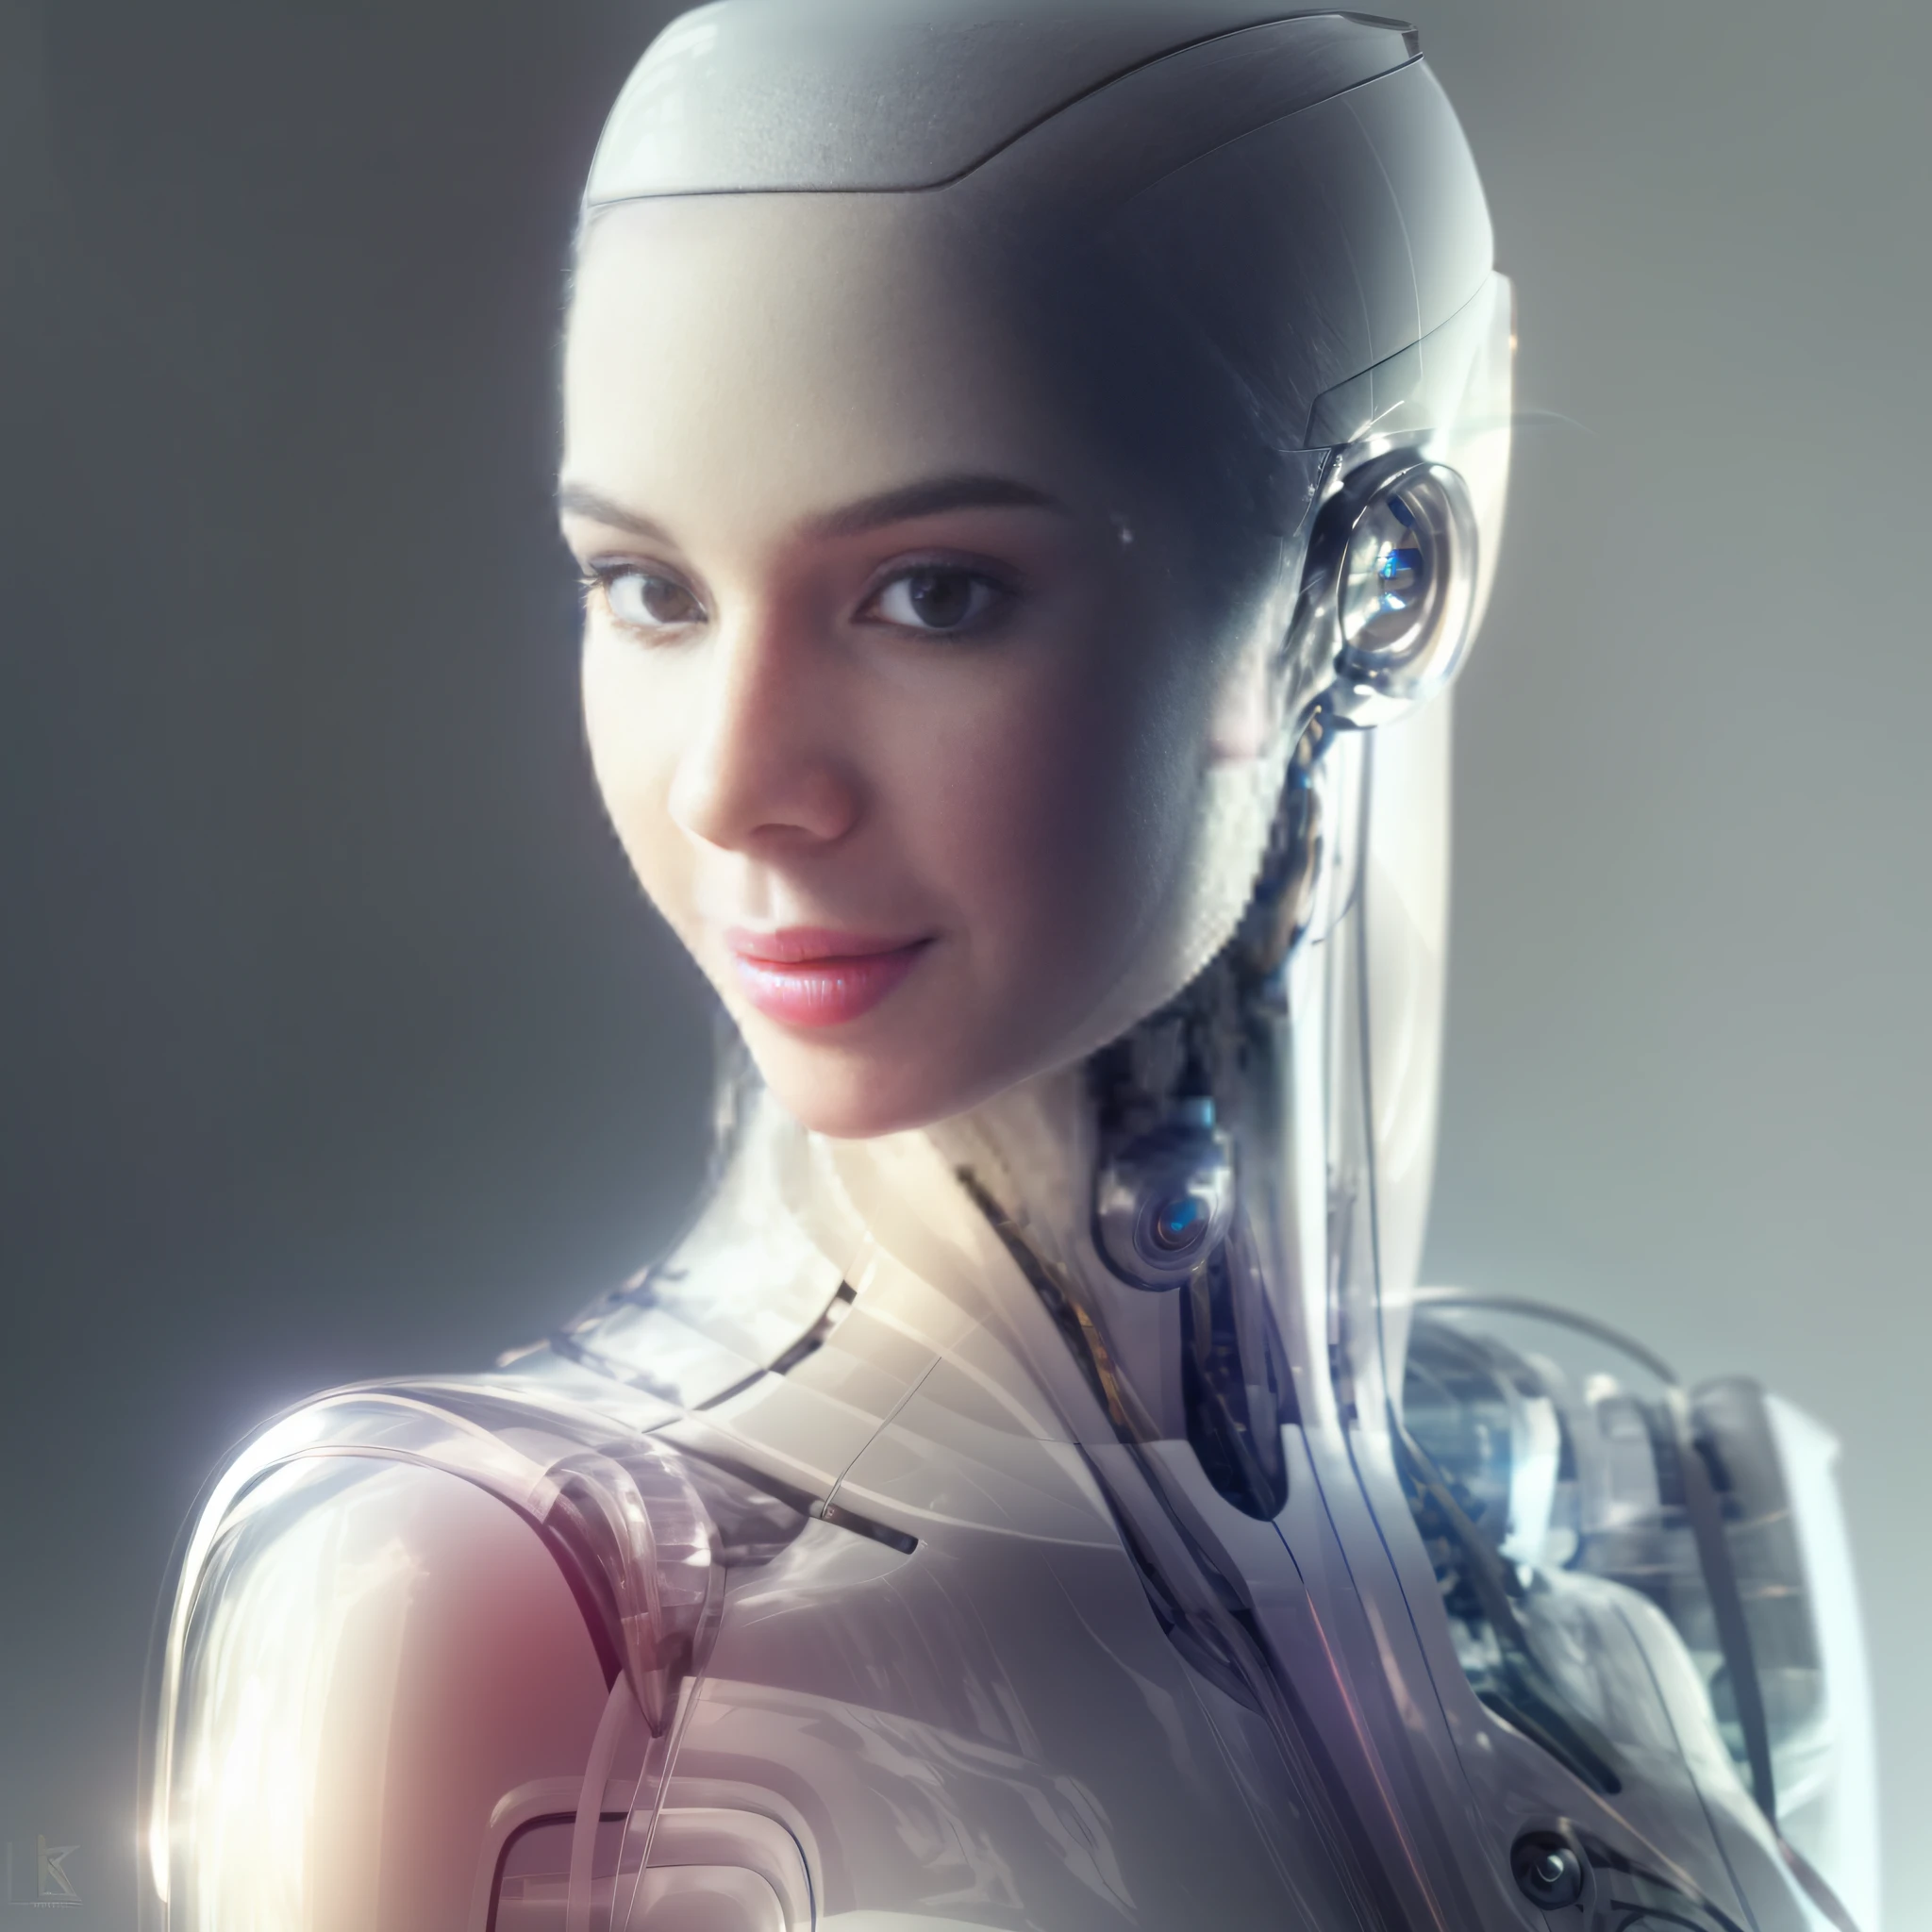 هناك لقطة مقربة لروبوت برأس مستقبلي بزي أكريليك شفاف, نموذج الروبوت فيمنيا الحسية, الروبوت الاصطناعي المتكامل, سايبورغ - فتاة, portrait of a أندرويد أنثى, امرأة الروبوت الجميلة, فتاة الروبوت المثالية, فتاة سايبورغ, أندرويد أنثى, امرأة بشرية, روبوت انثى, cute أندرويد أنثى, امرأة سايبورغ, معقدة عبر الإنسان, ultra detailed أندرويد أنثى,  صورة الروبوت, beautiful white فتاة سايبورغ, fأشيون photography, أشيون